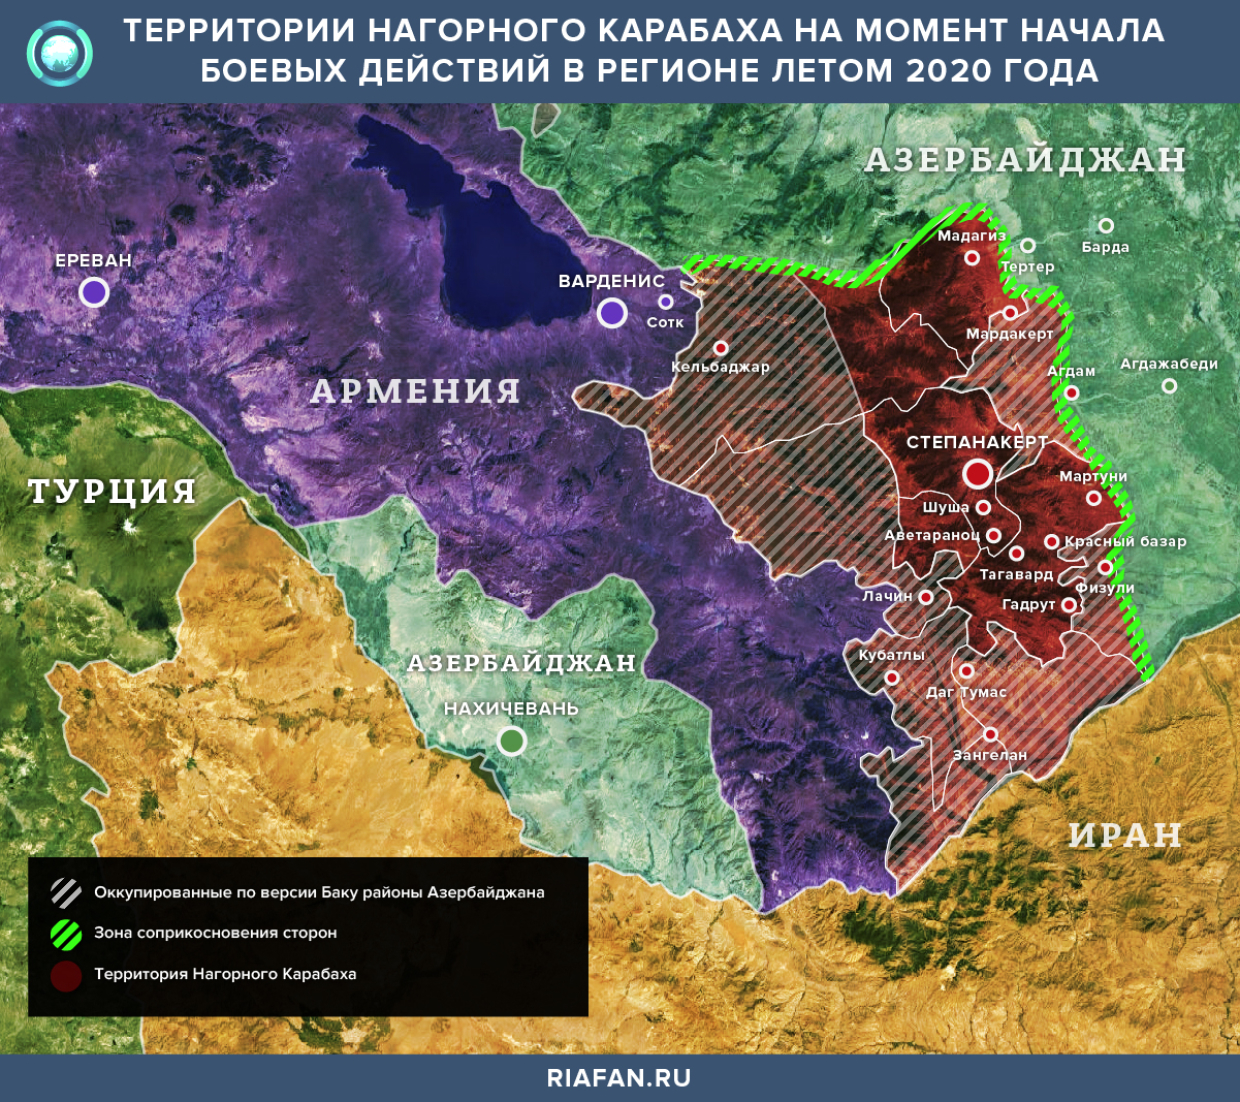 Территории Нагорного Карабаха на момент начала боевых действий летом 2020 года